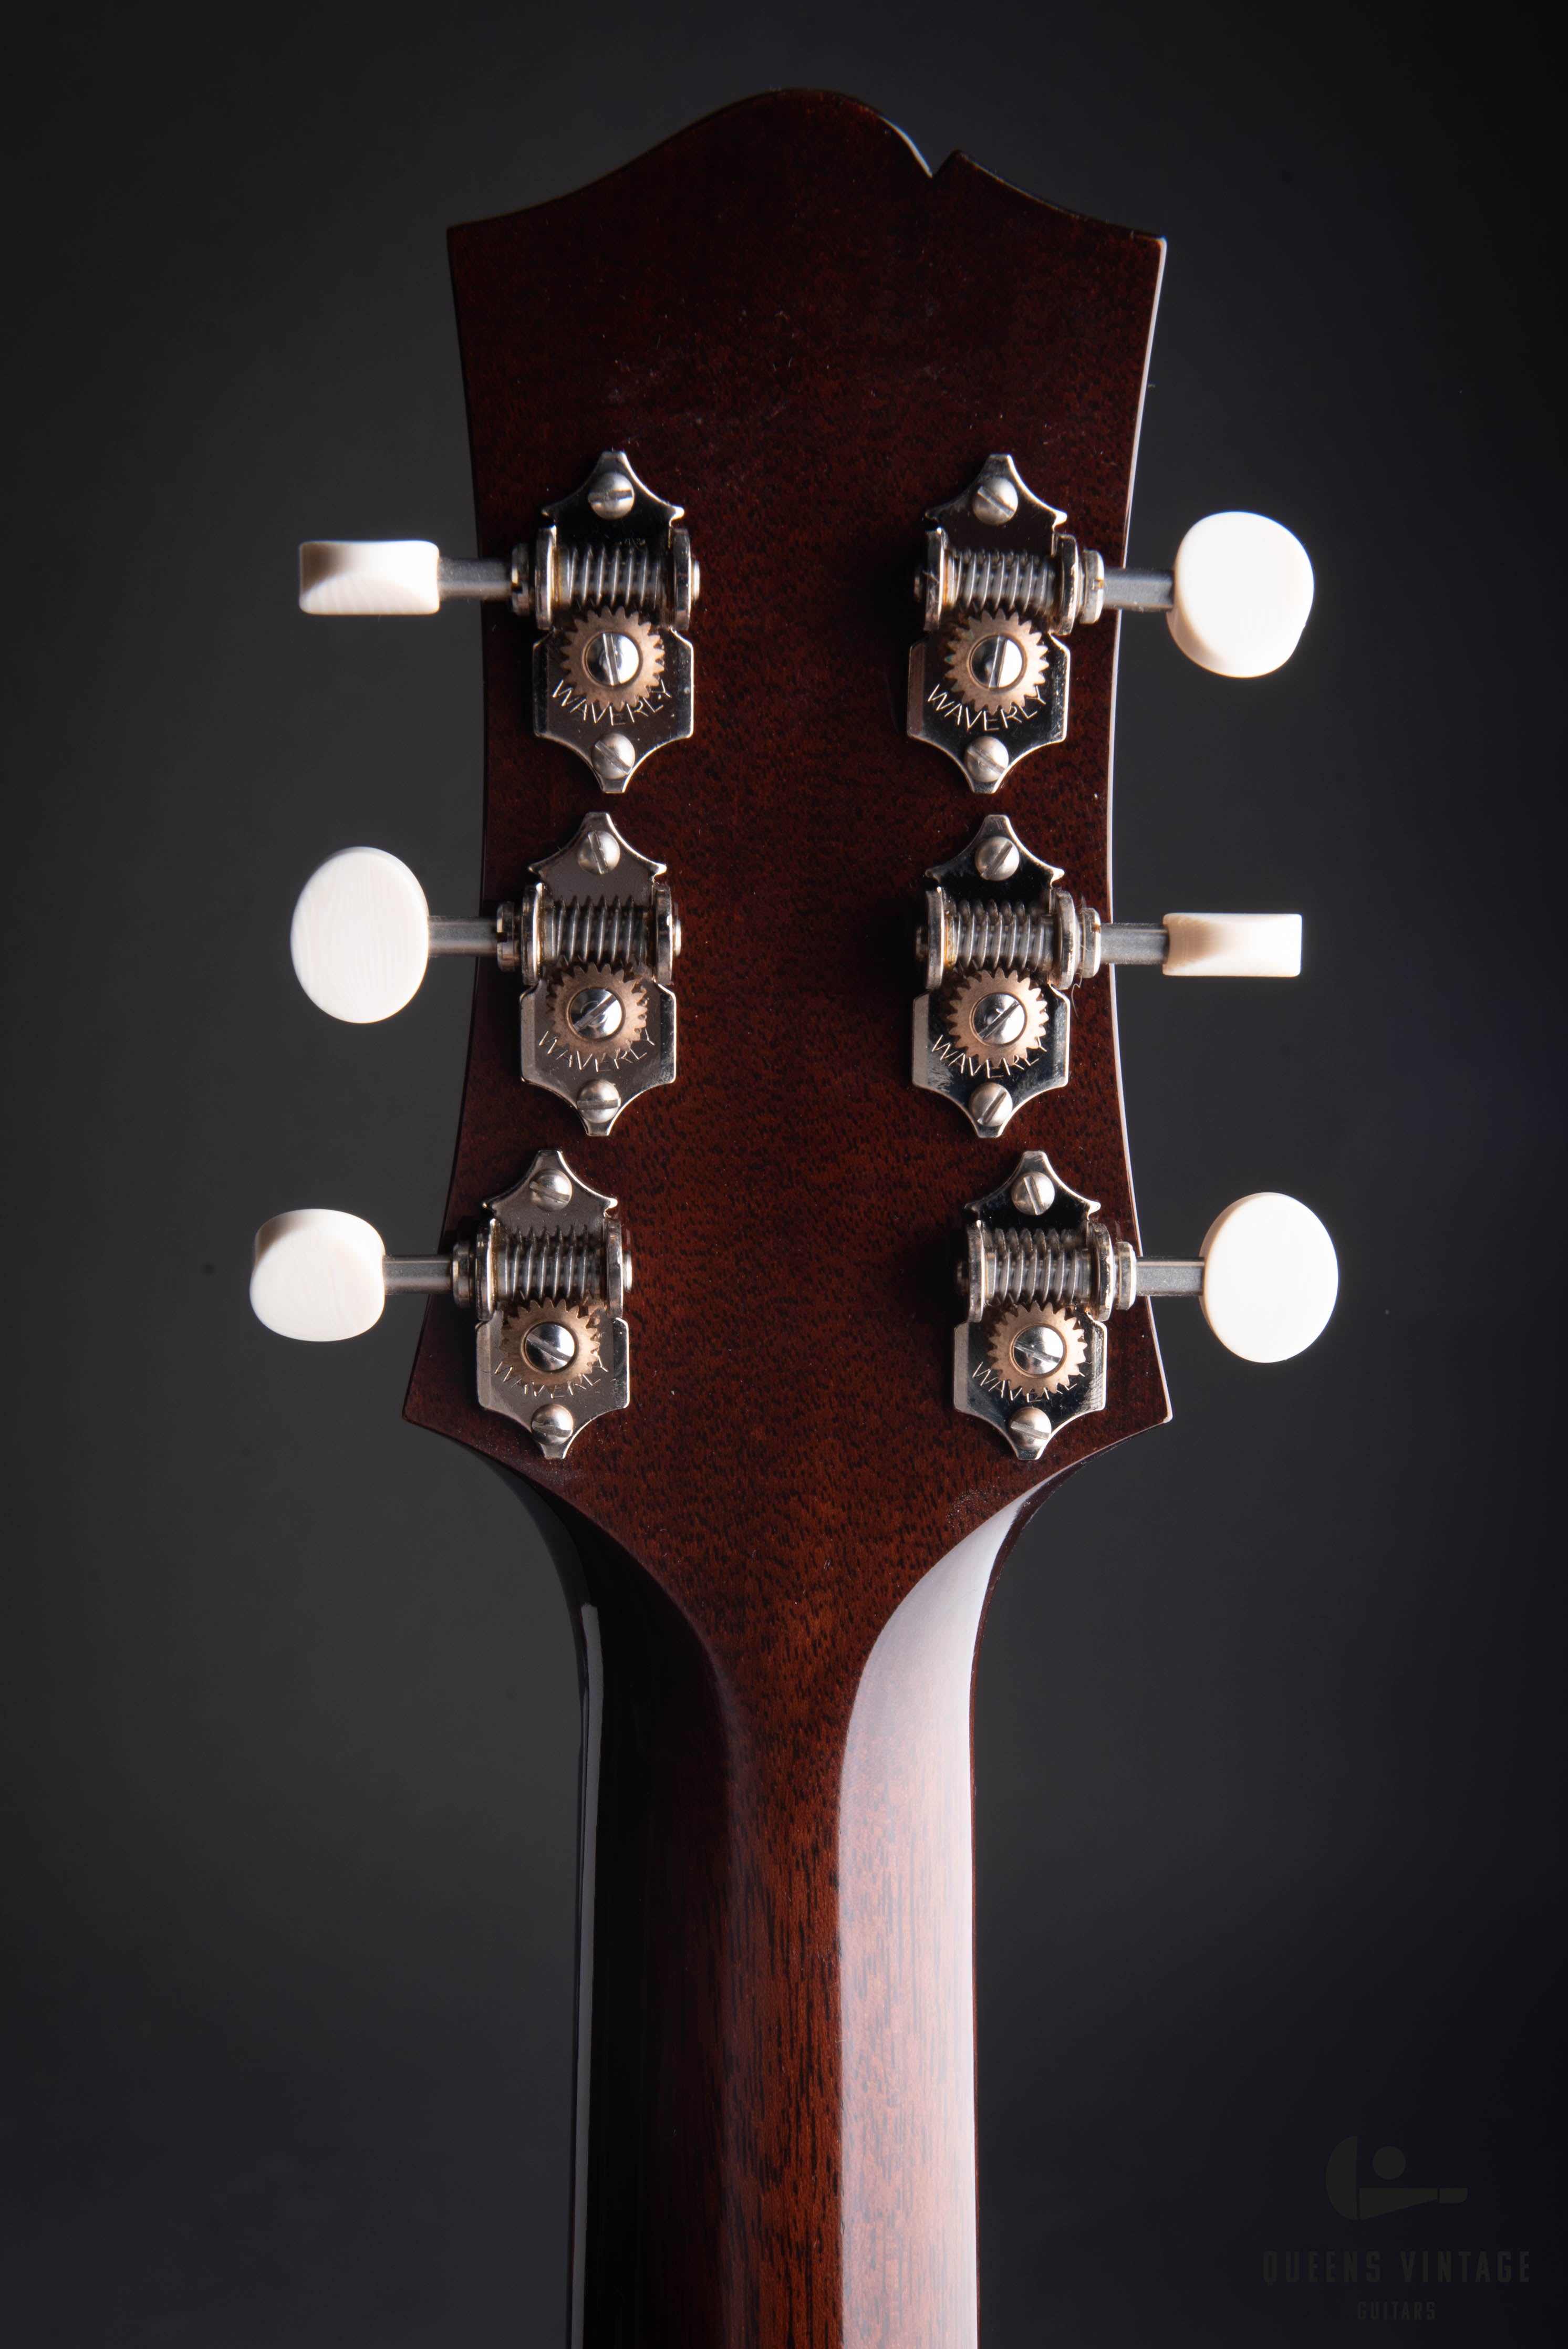 2017 Collings CJ35 SB Acoustic Guitar